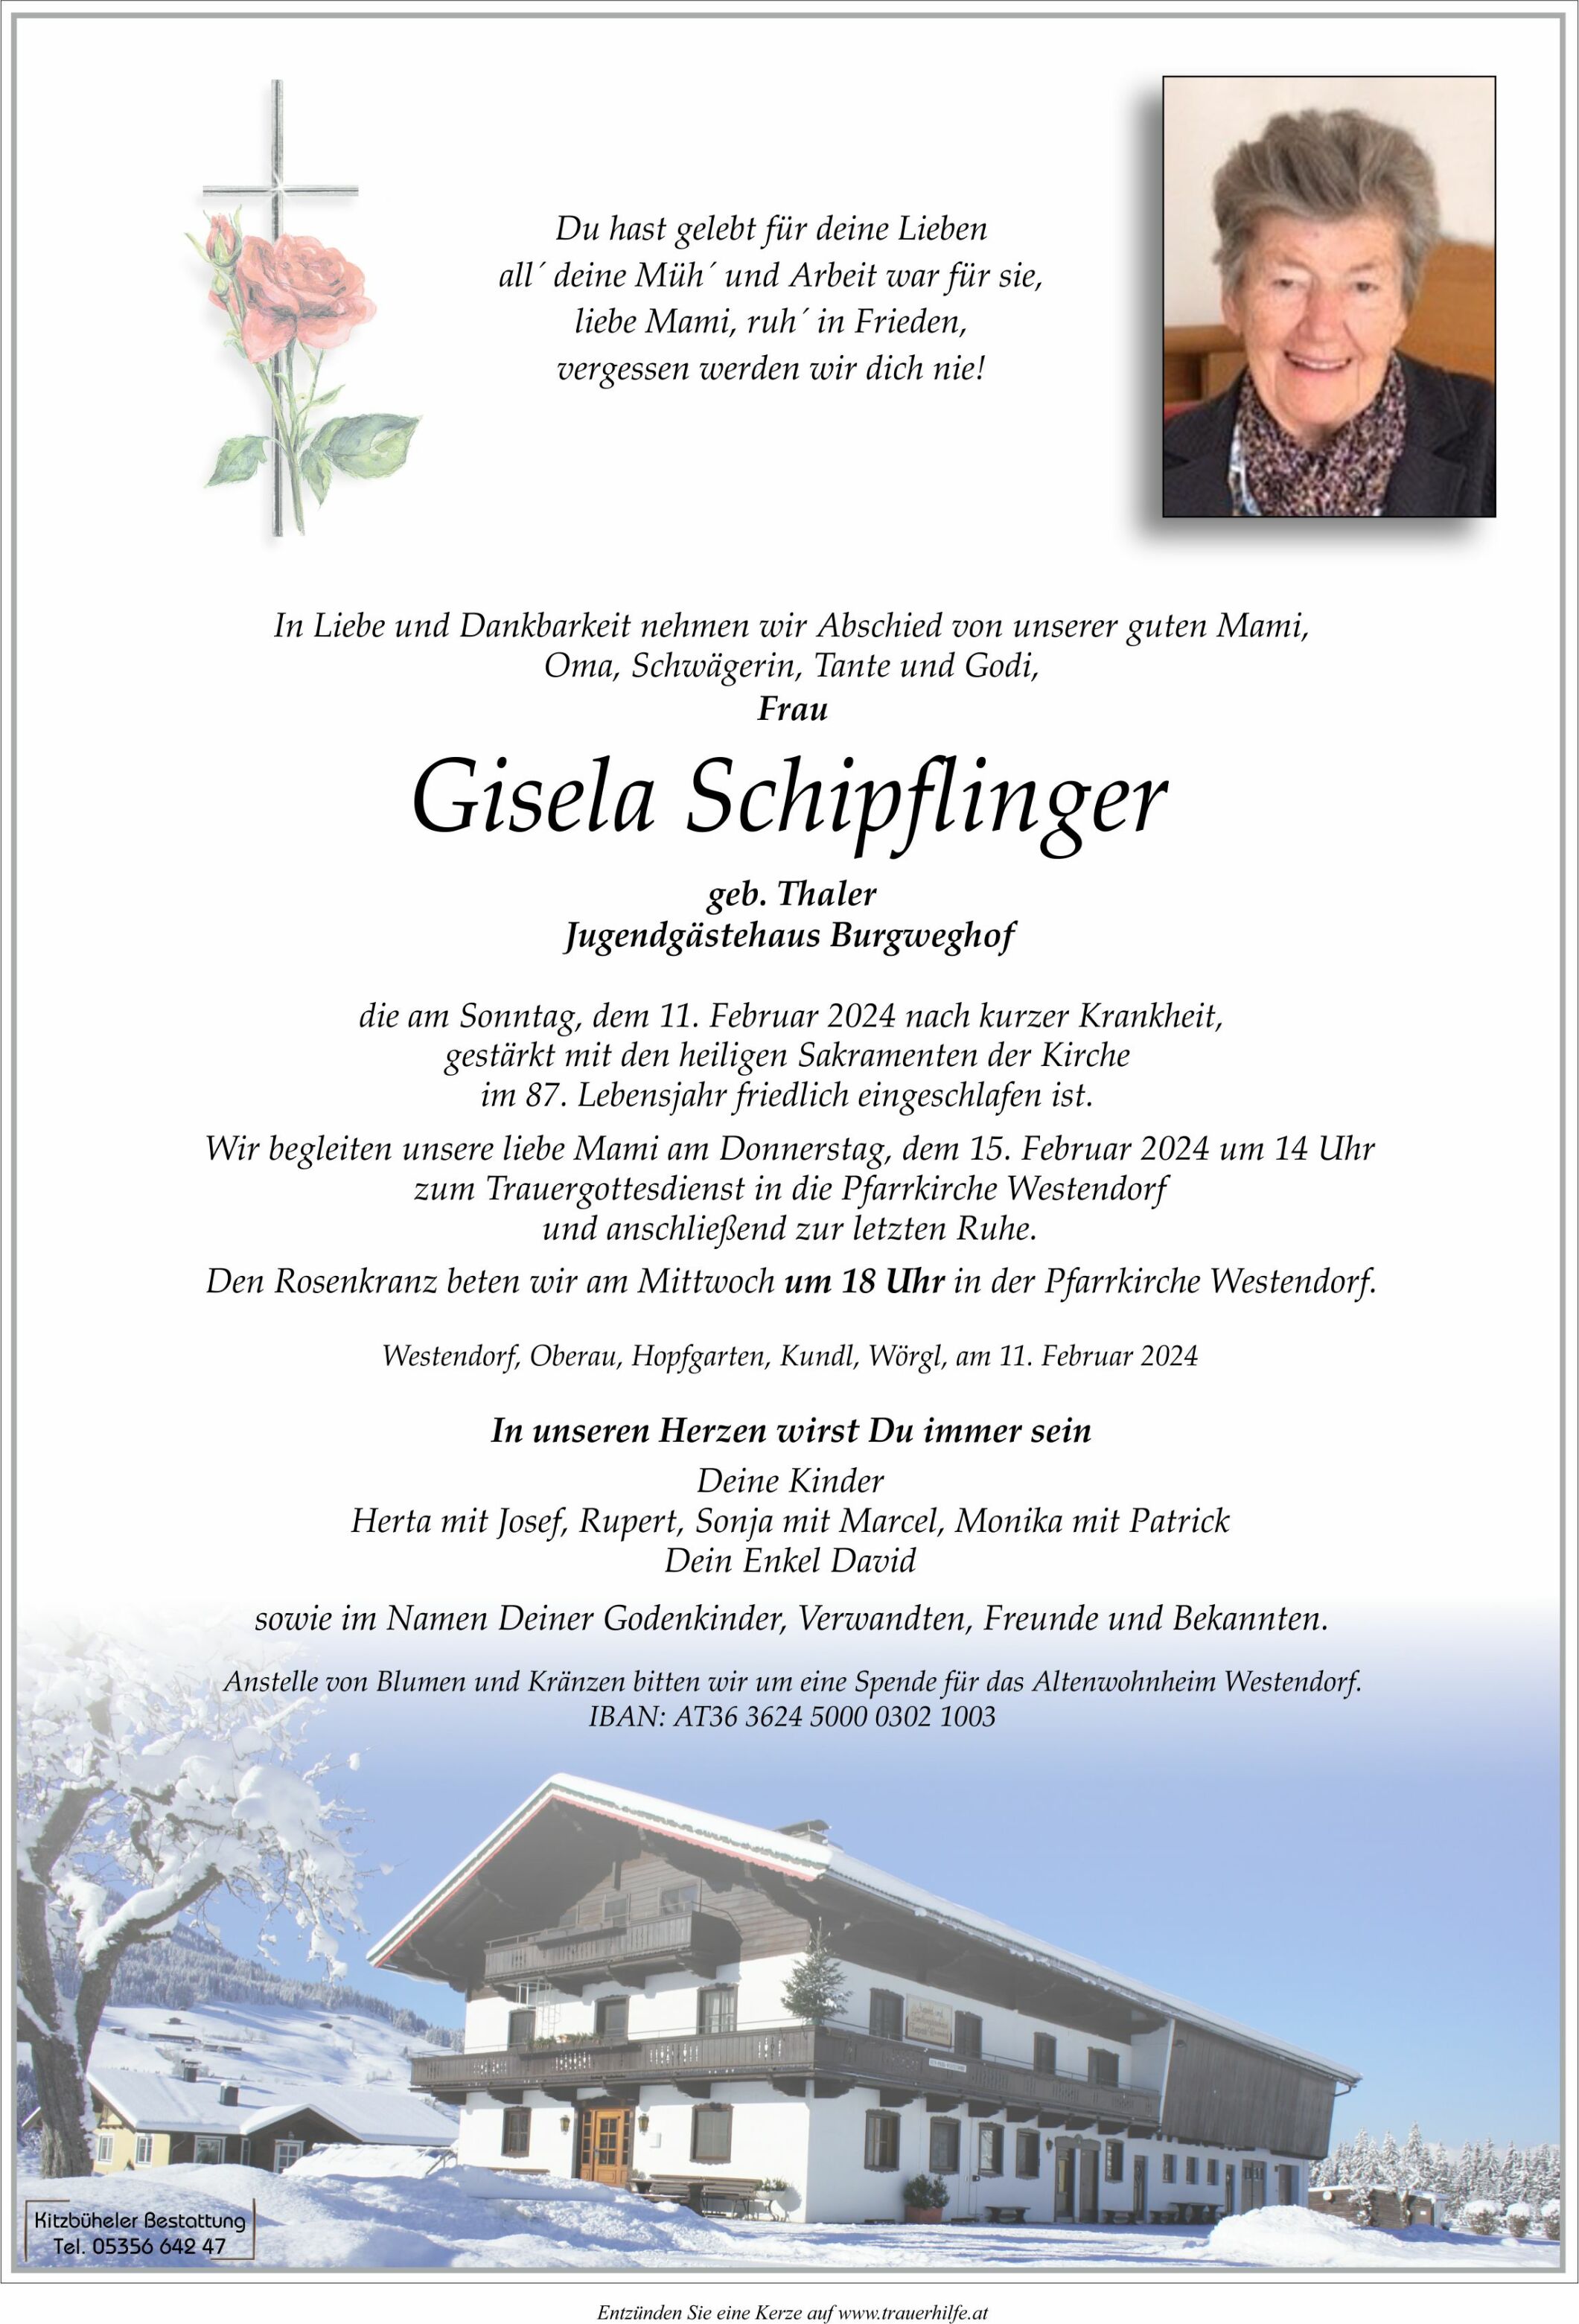 Gisela Schipflinger